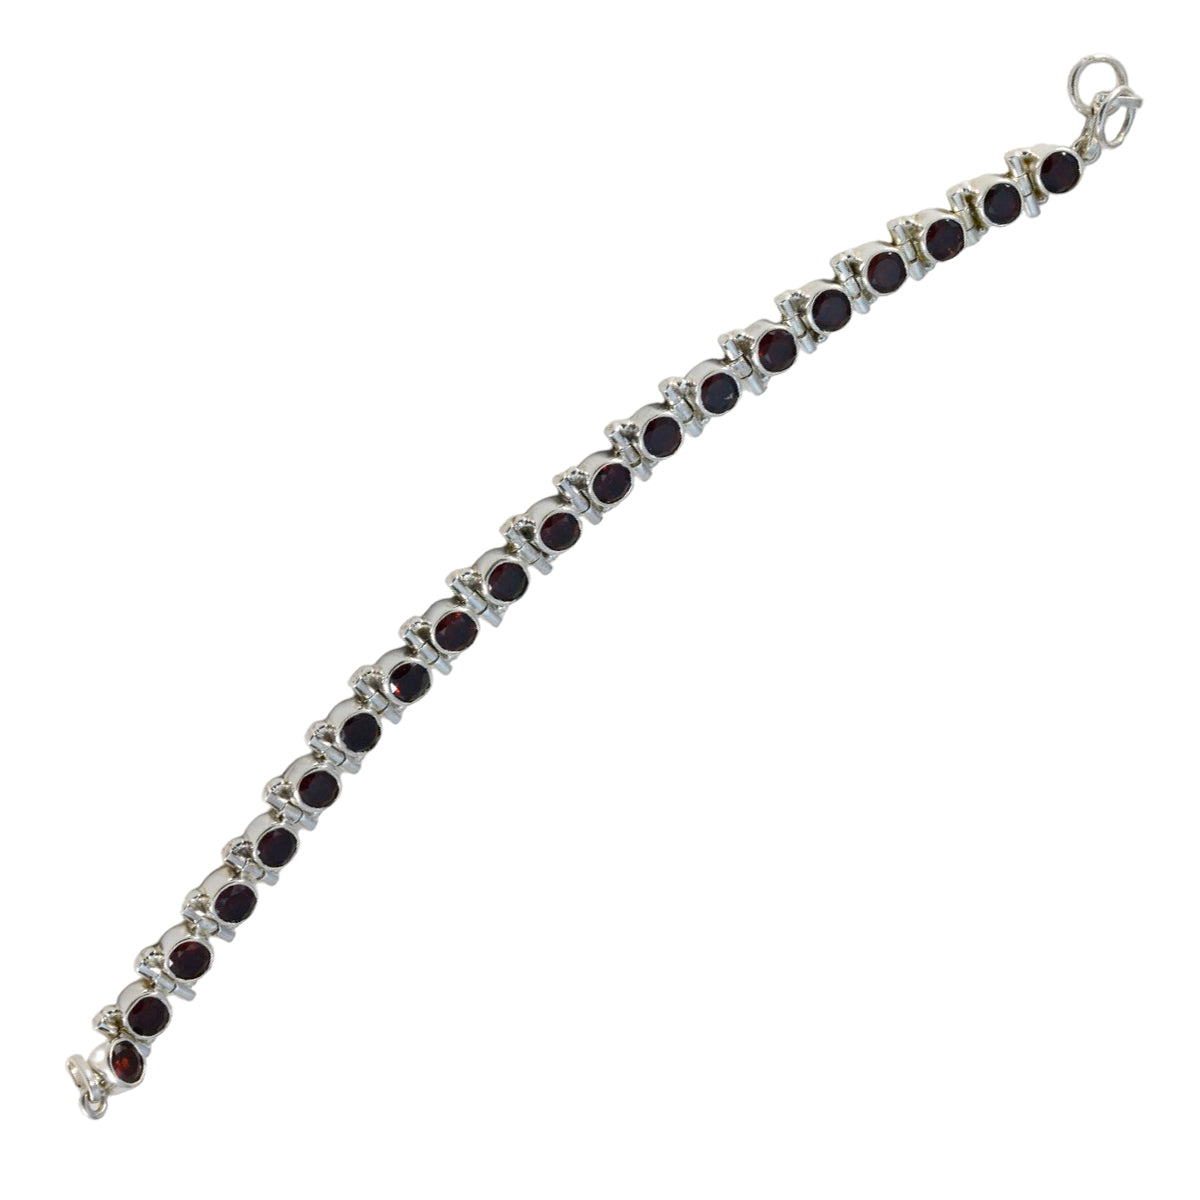 Riyo Umfangreiches 925er-Sterlingsilber-Armband für Damen, Granat-Armband, Lünettenfassung, Armband mit Angelhaken, Tennis-Armband, L, Größe 15,2–21,6 cm.